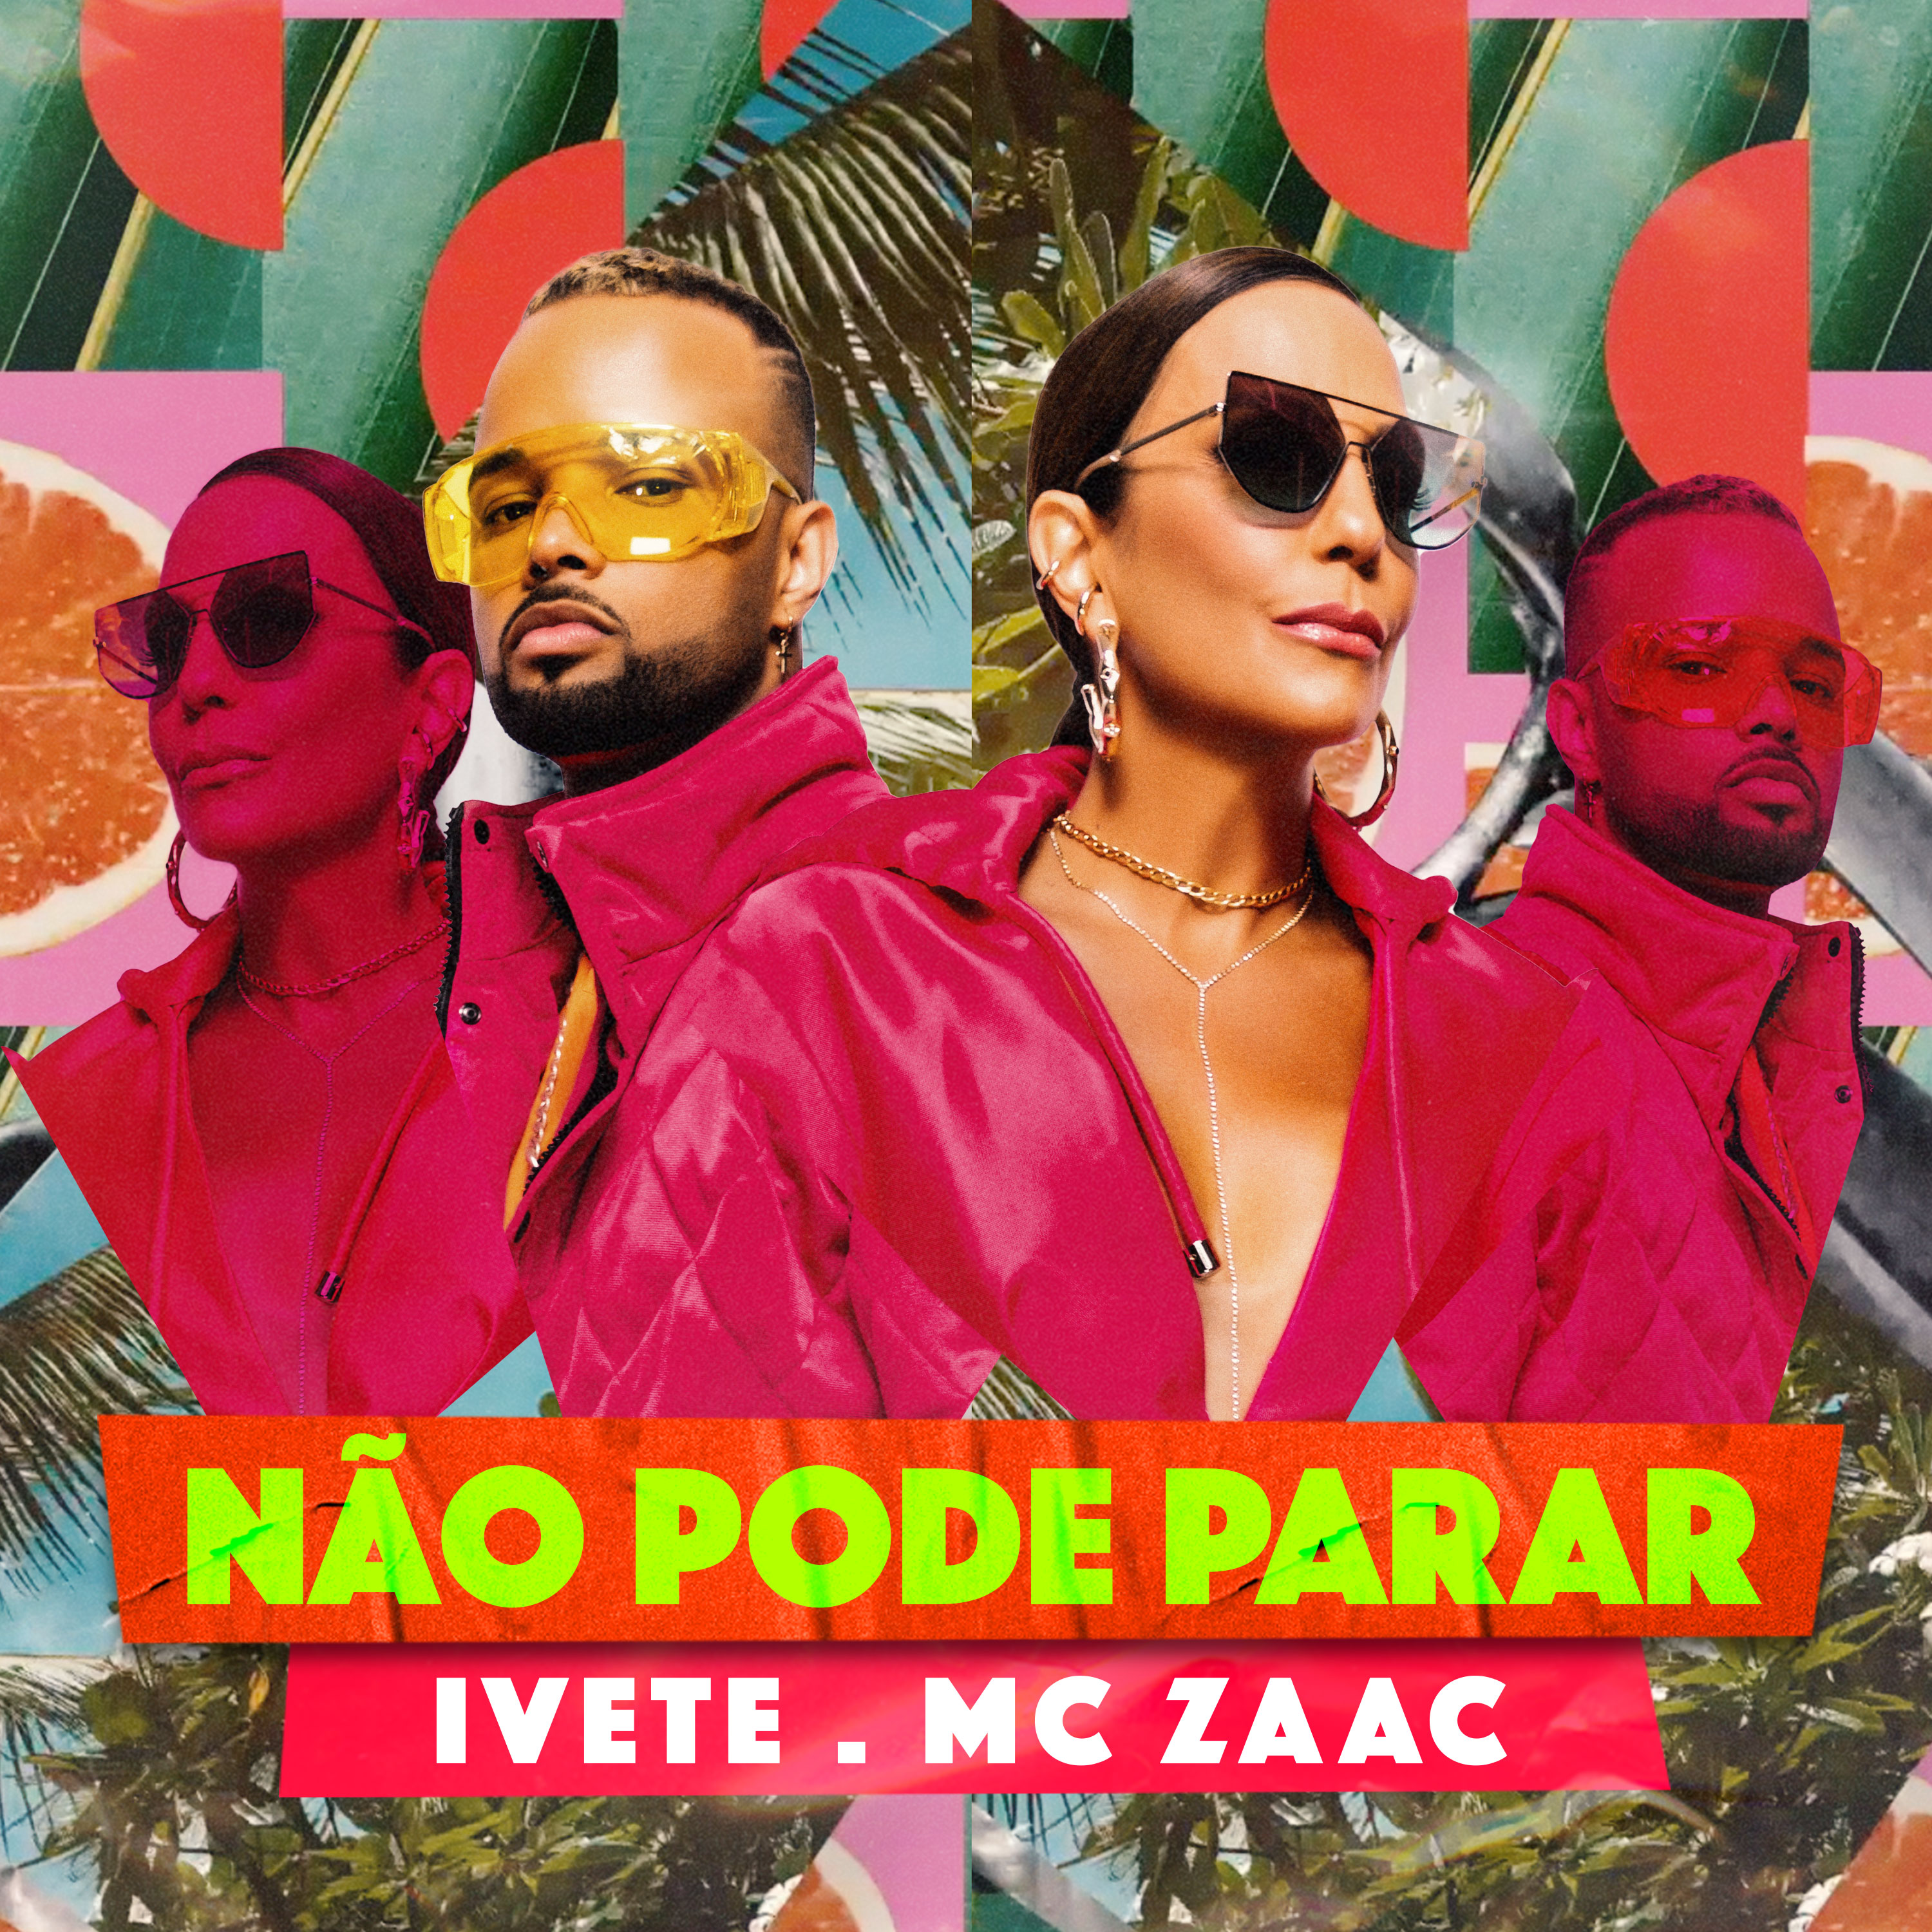 Ivete Sangalo chega com muita dança e funk em “Não Pode Parar”, sua parceria com MC Zaac